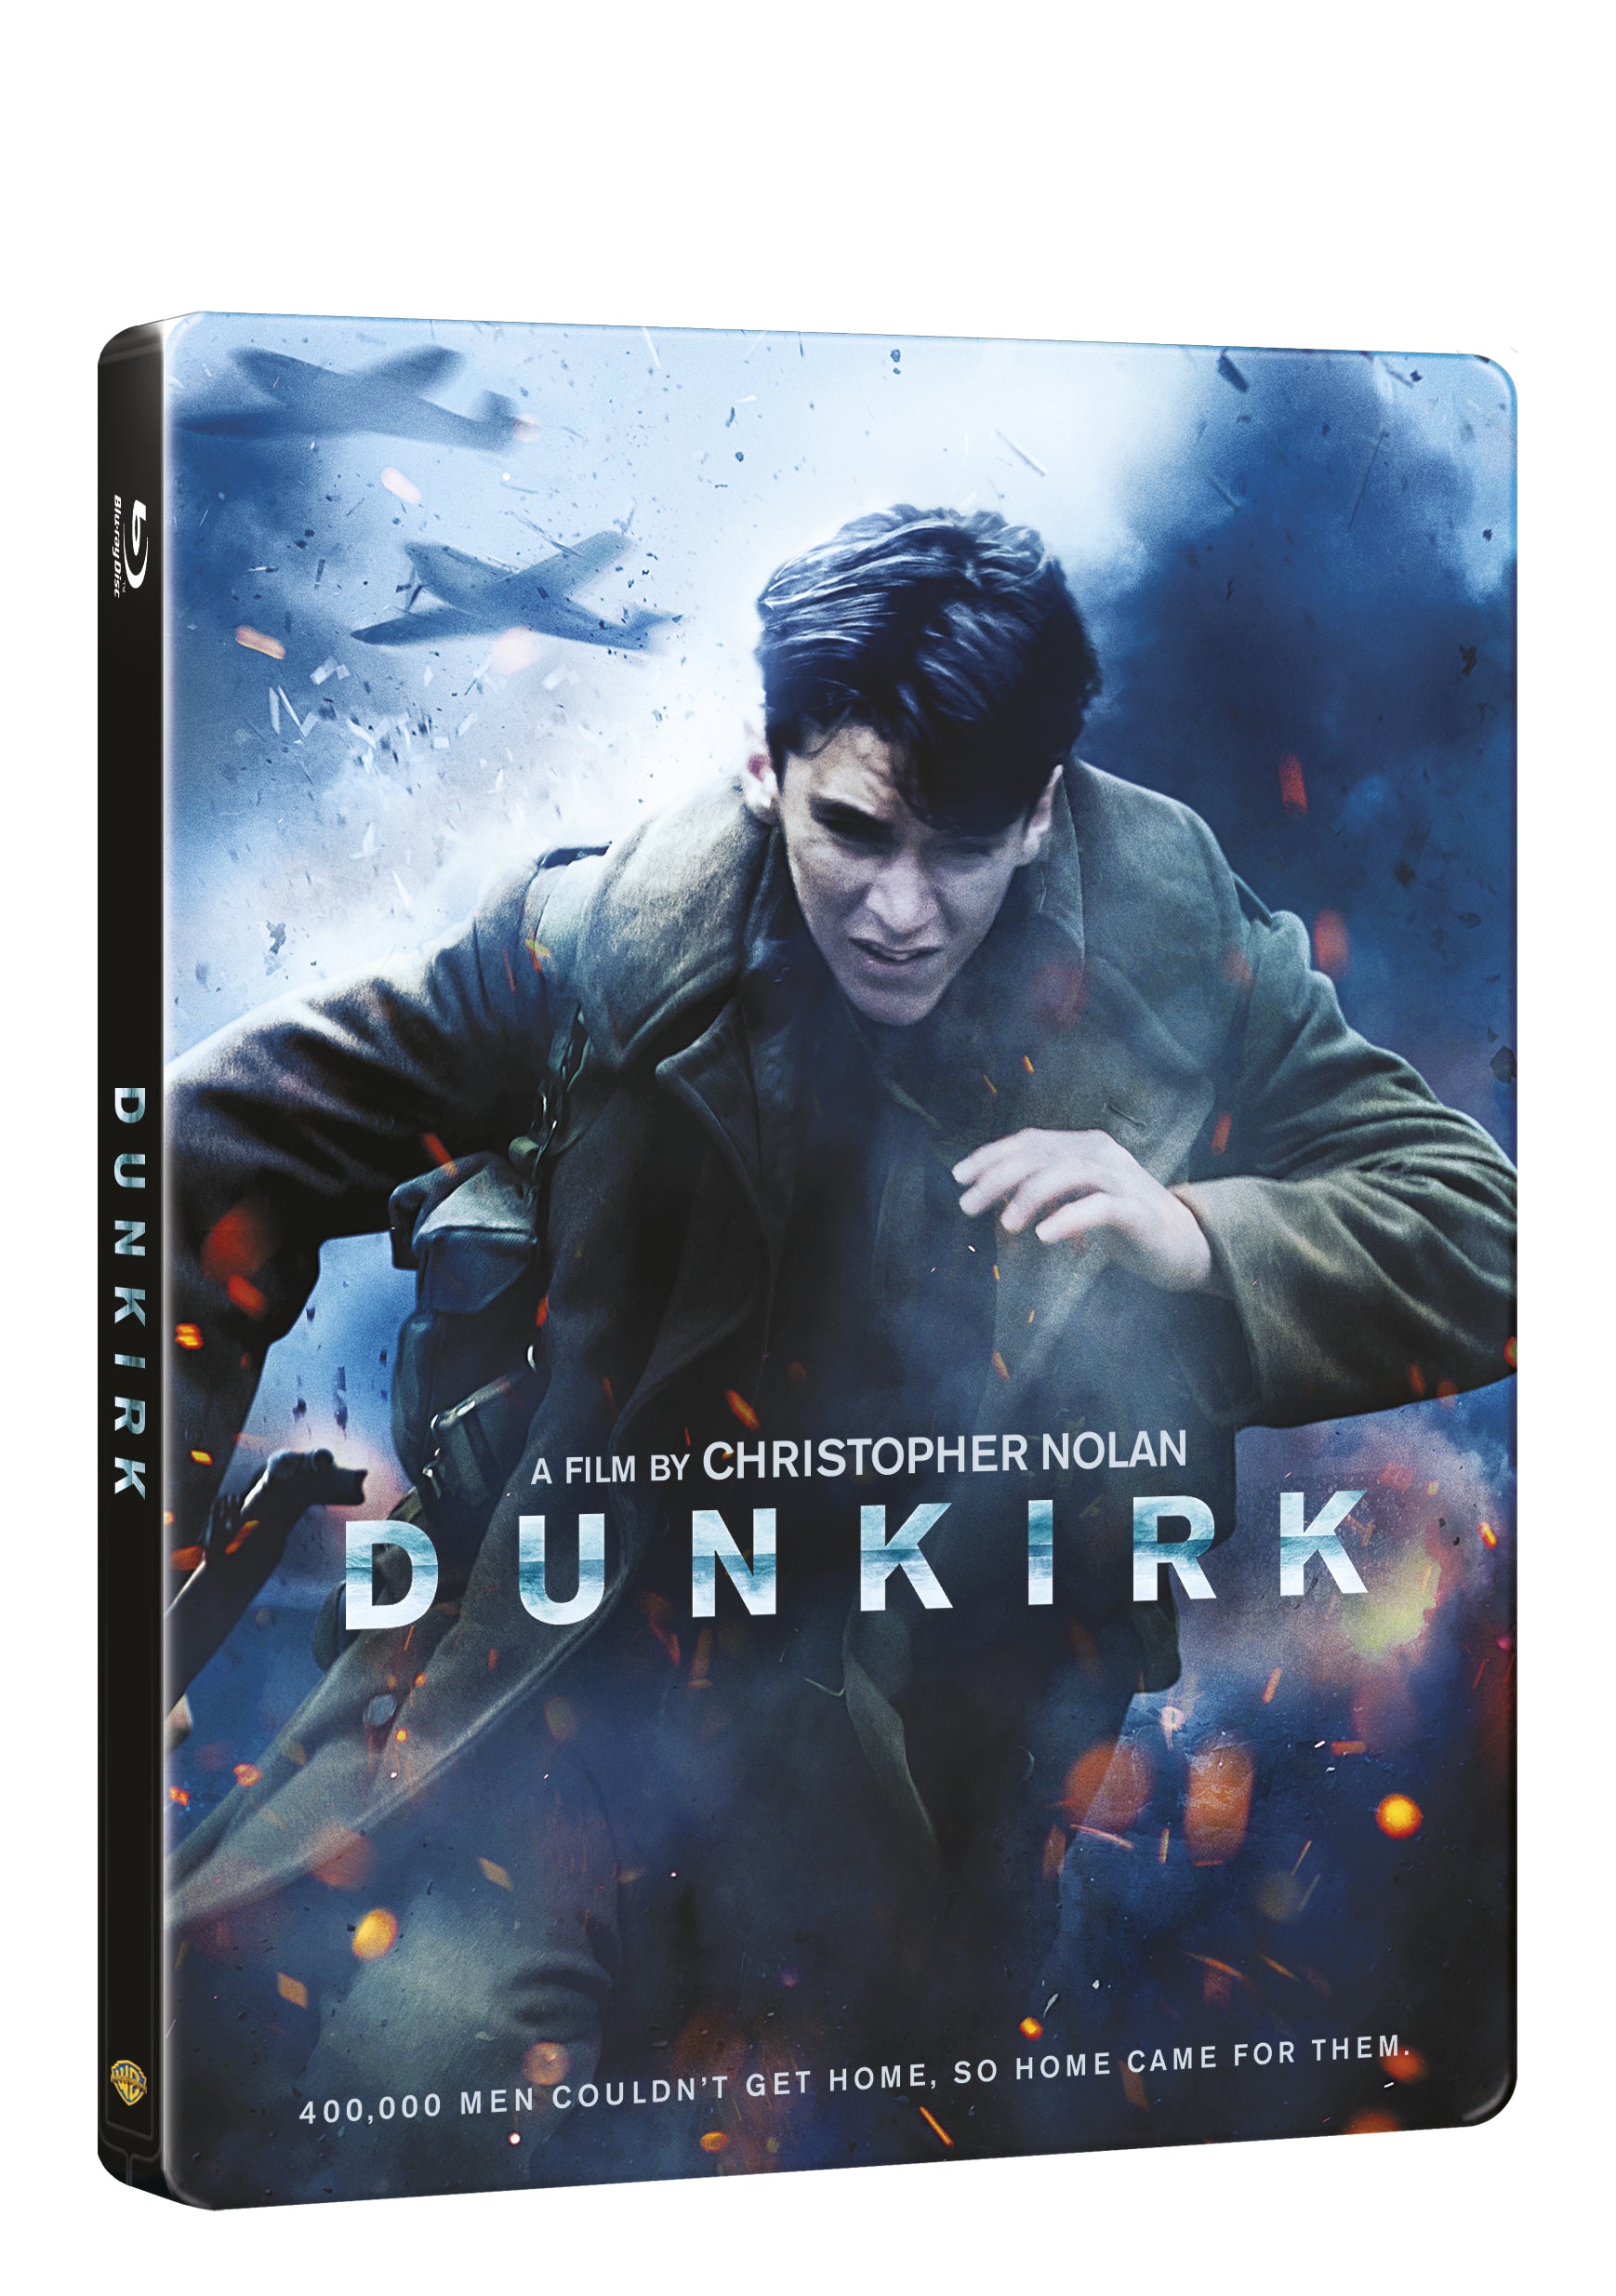 Dunkerk 2BD (BD+bonus disk) - steelbook / Dunkirk - Czech version